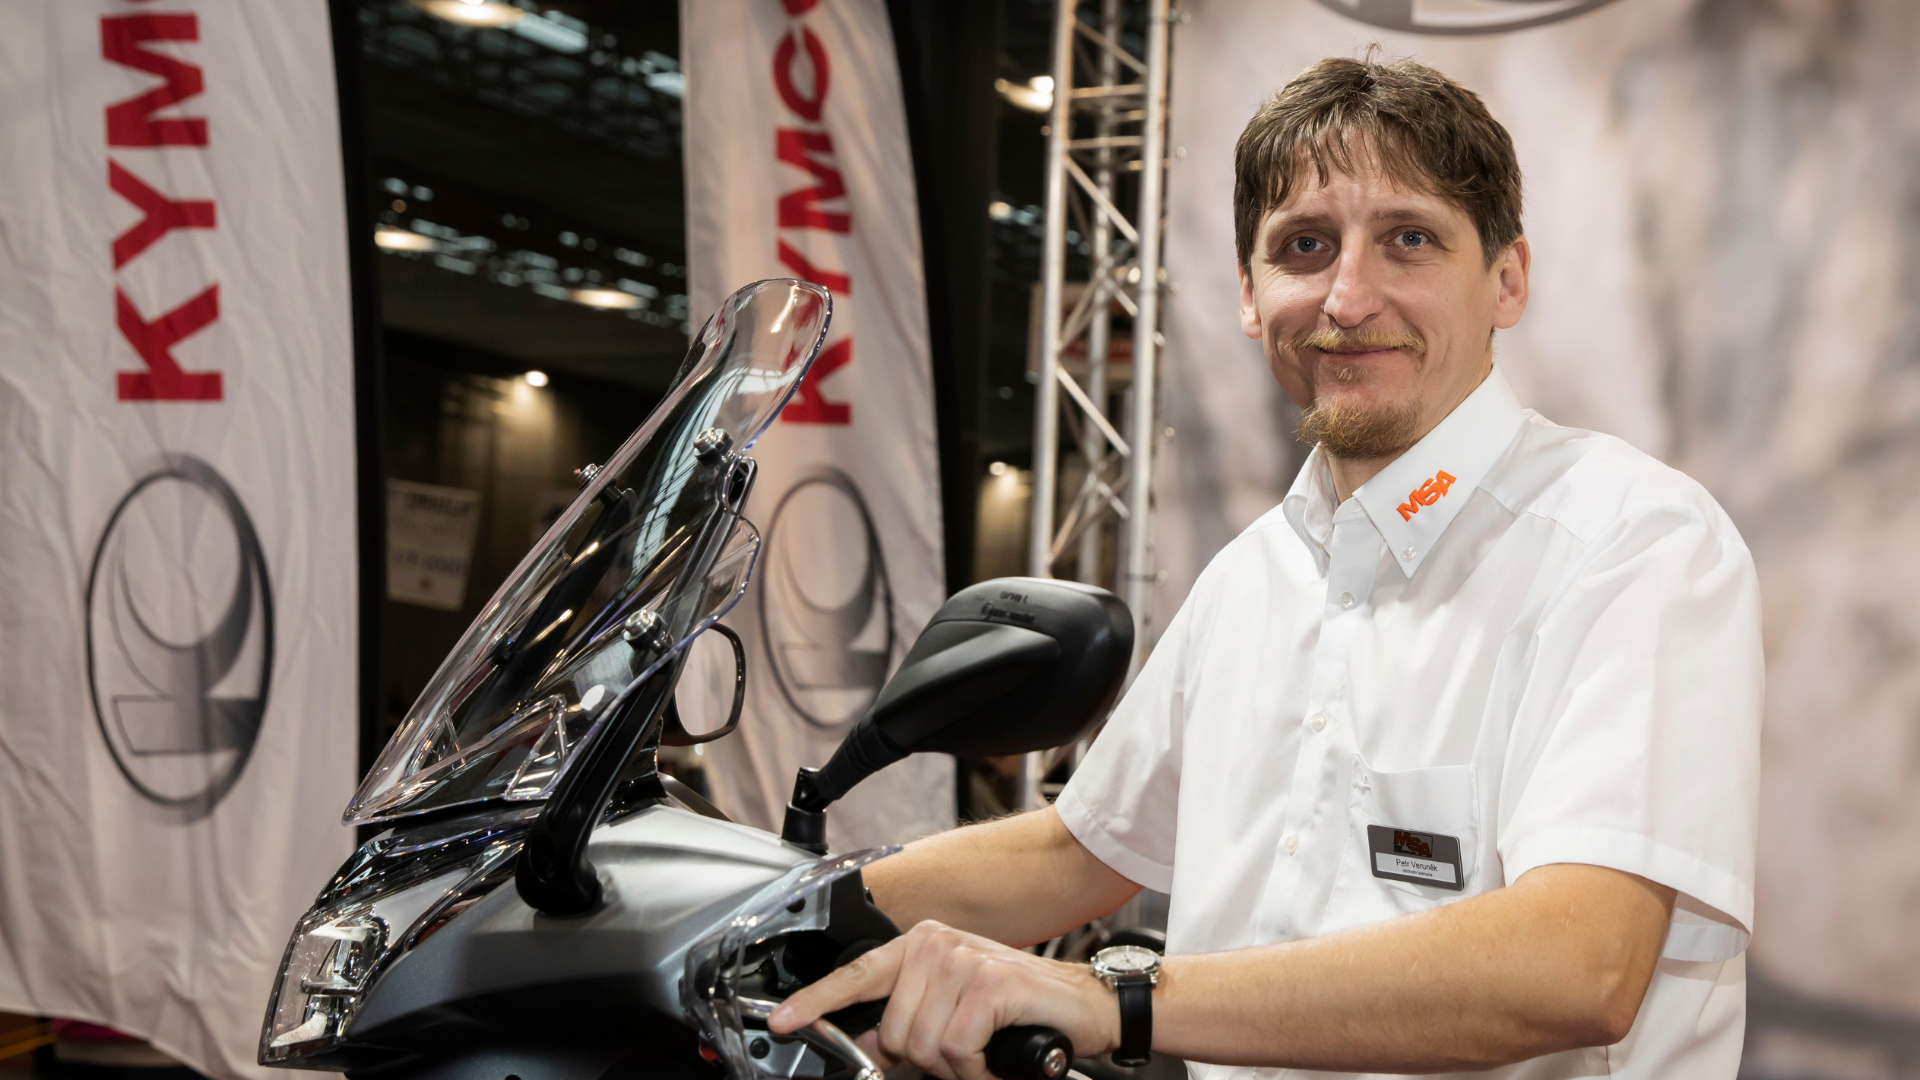 Rozhovor s Petrem Veruňkem, obchodním zástupcem firmy MSA Moto Sport CZ